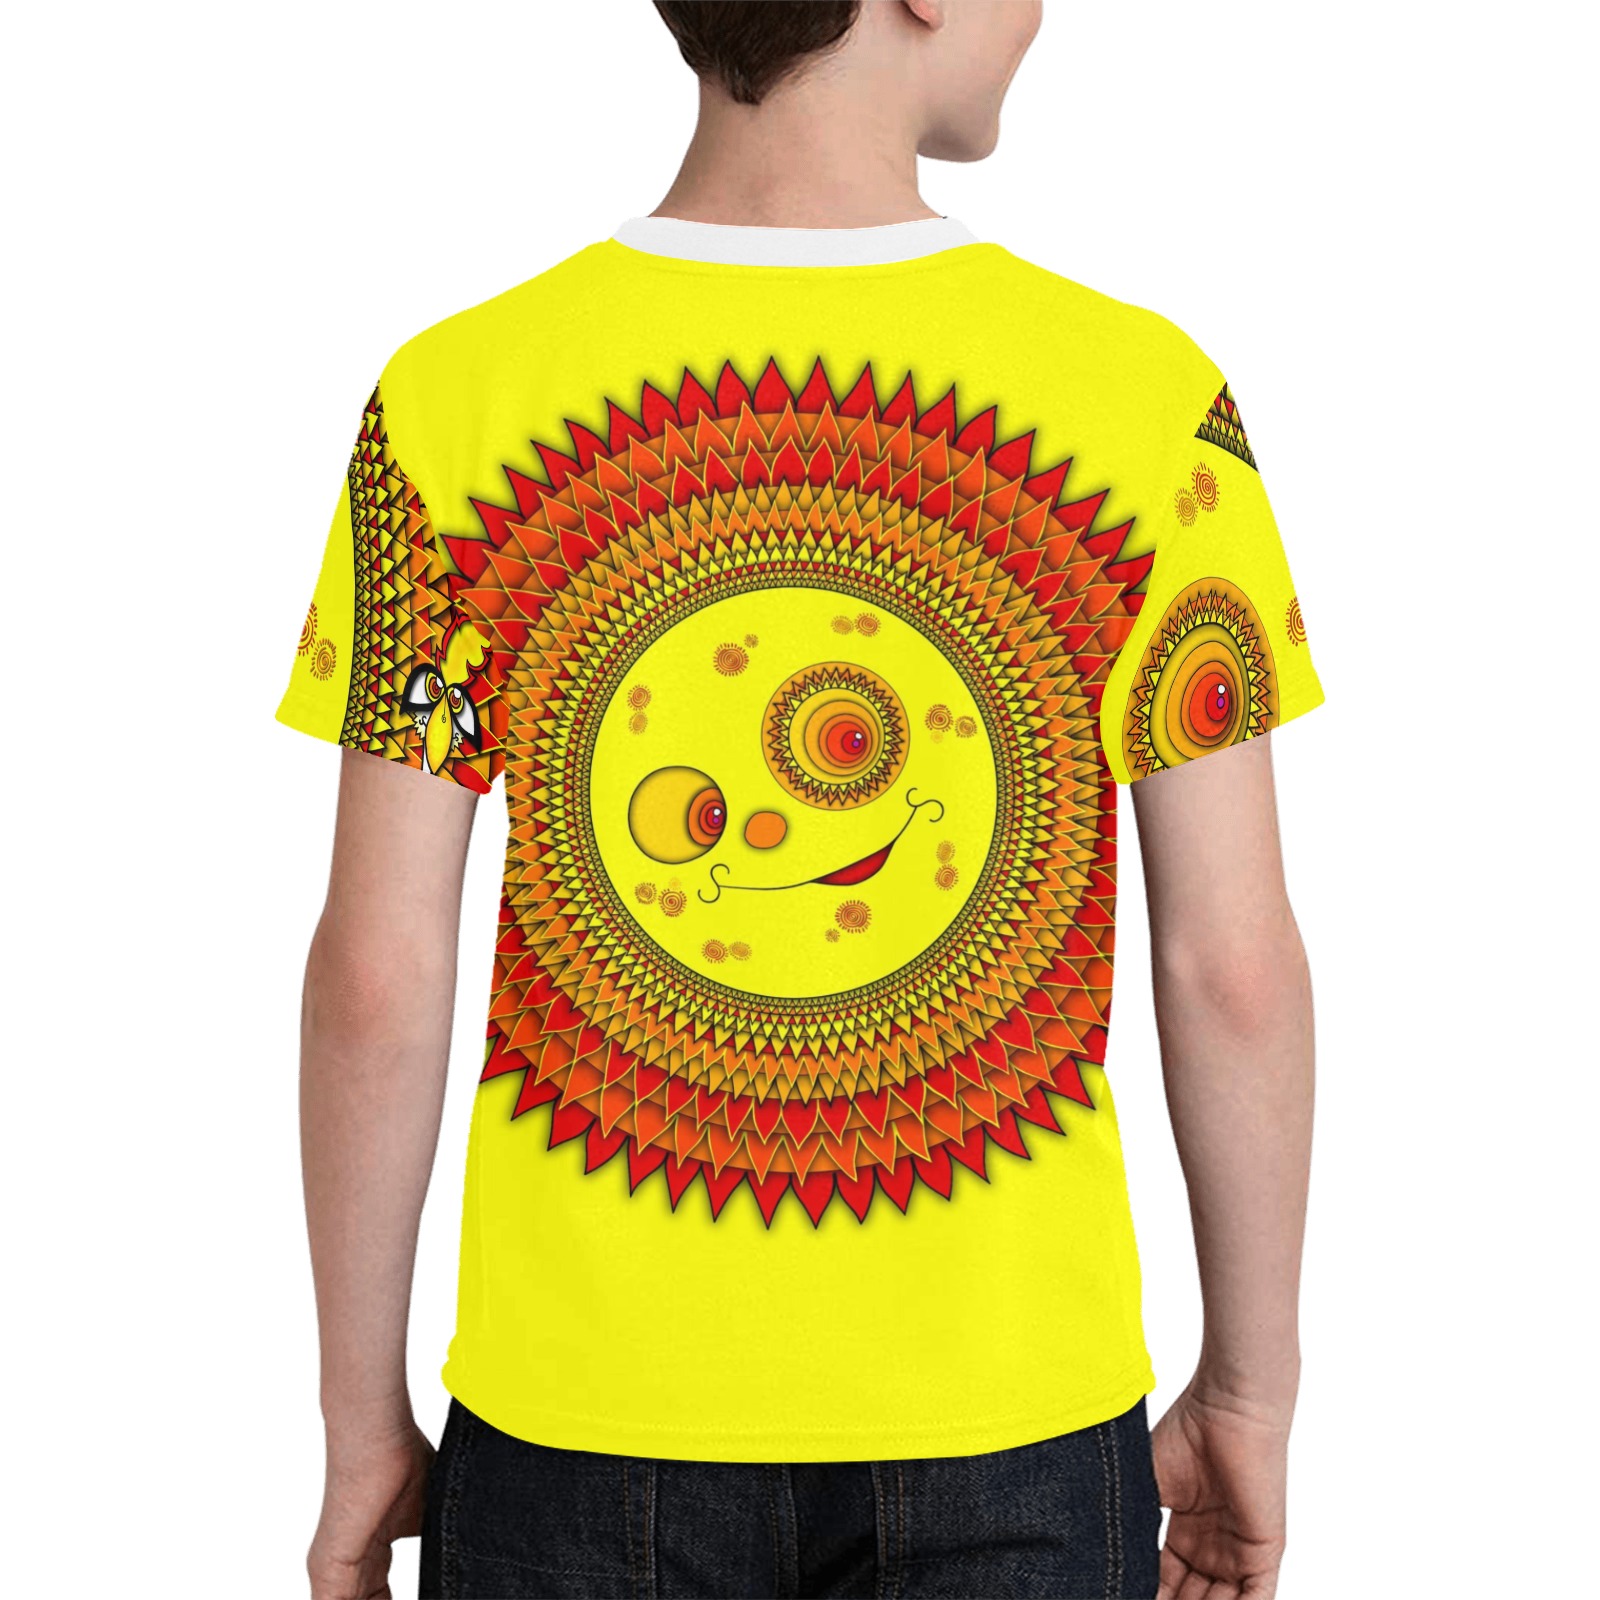 ITEM 20 - T-SHIRT - SUN OF JUNGLEBIRDY Kids' All Over Print T-shirt (Model T65)